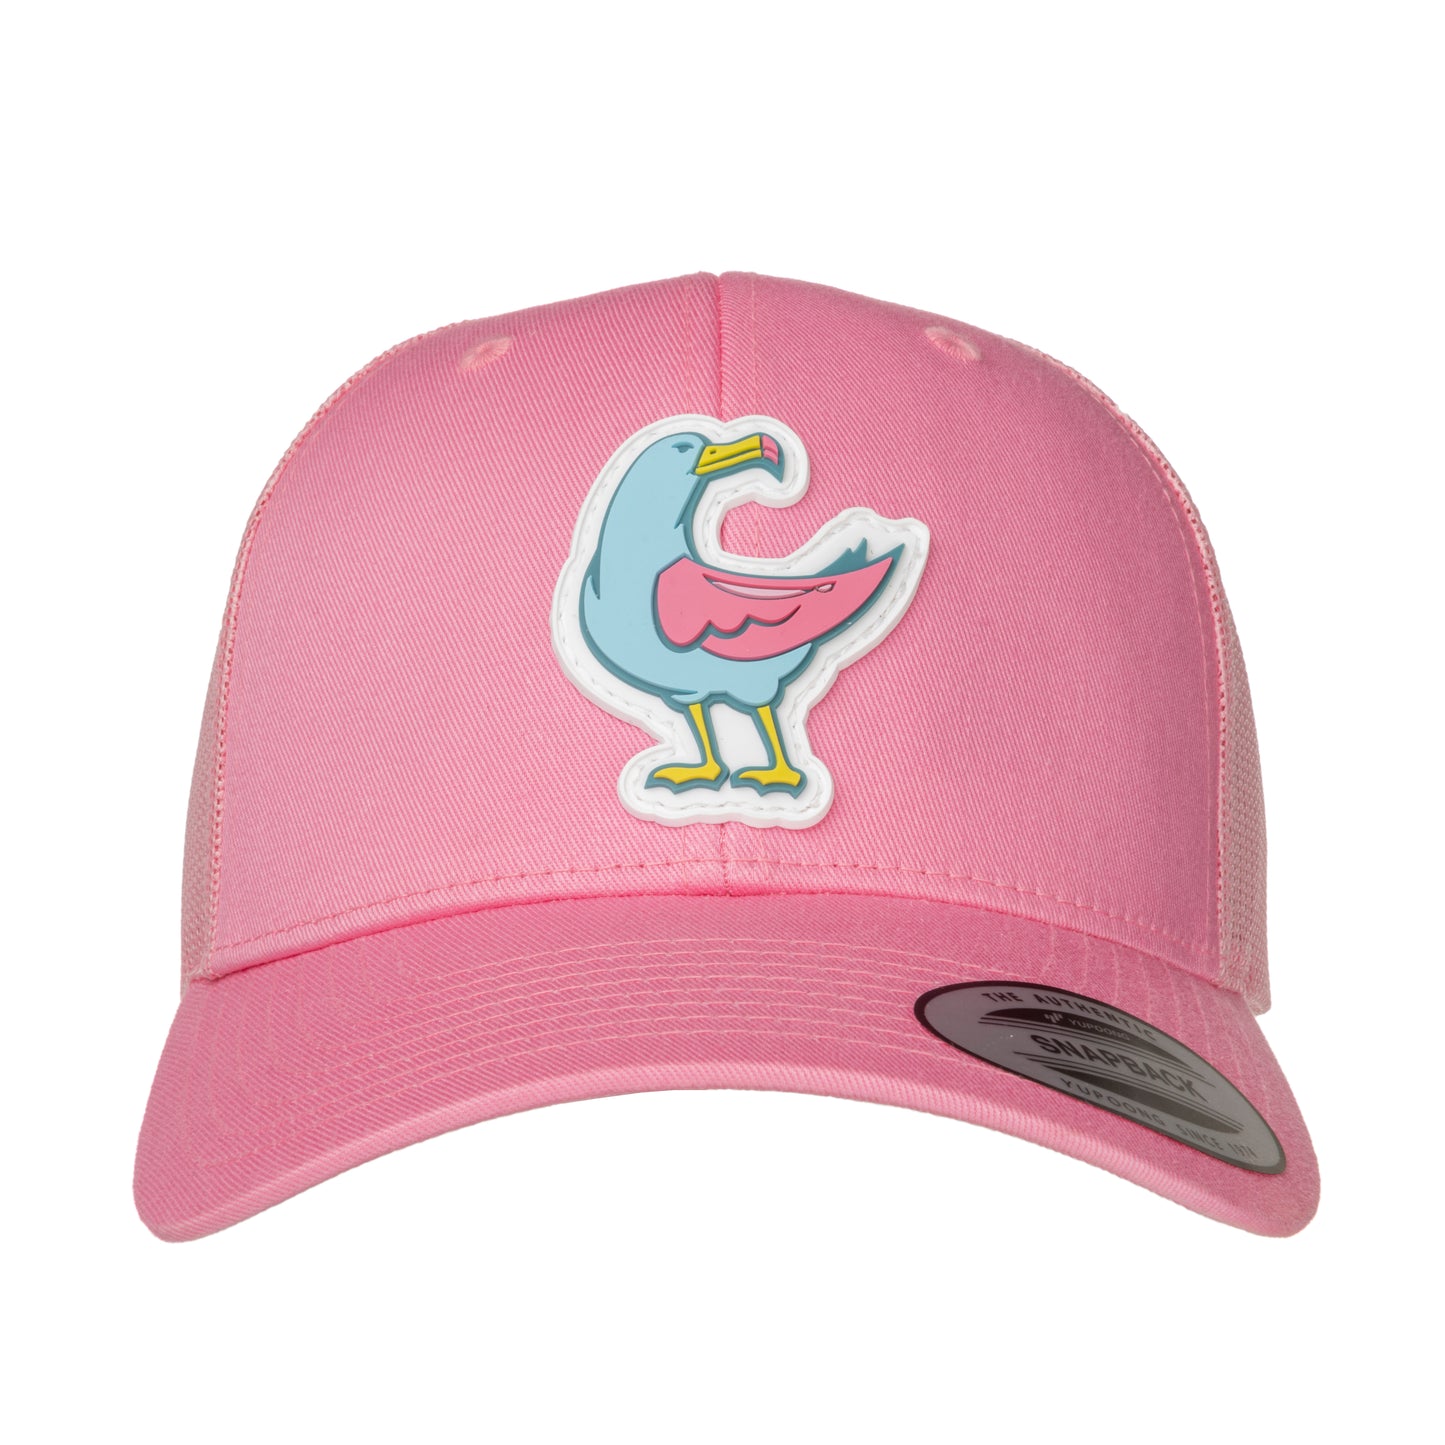 Trucker cap - Albatross - pink